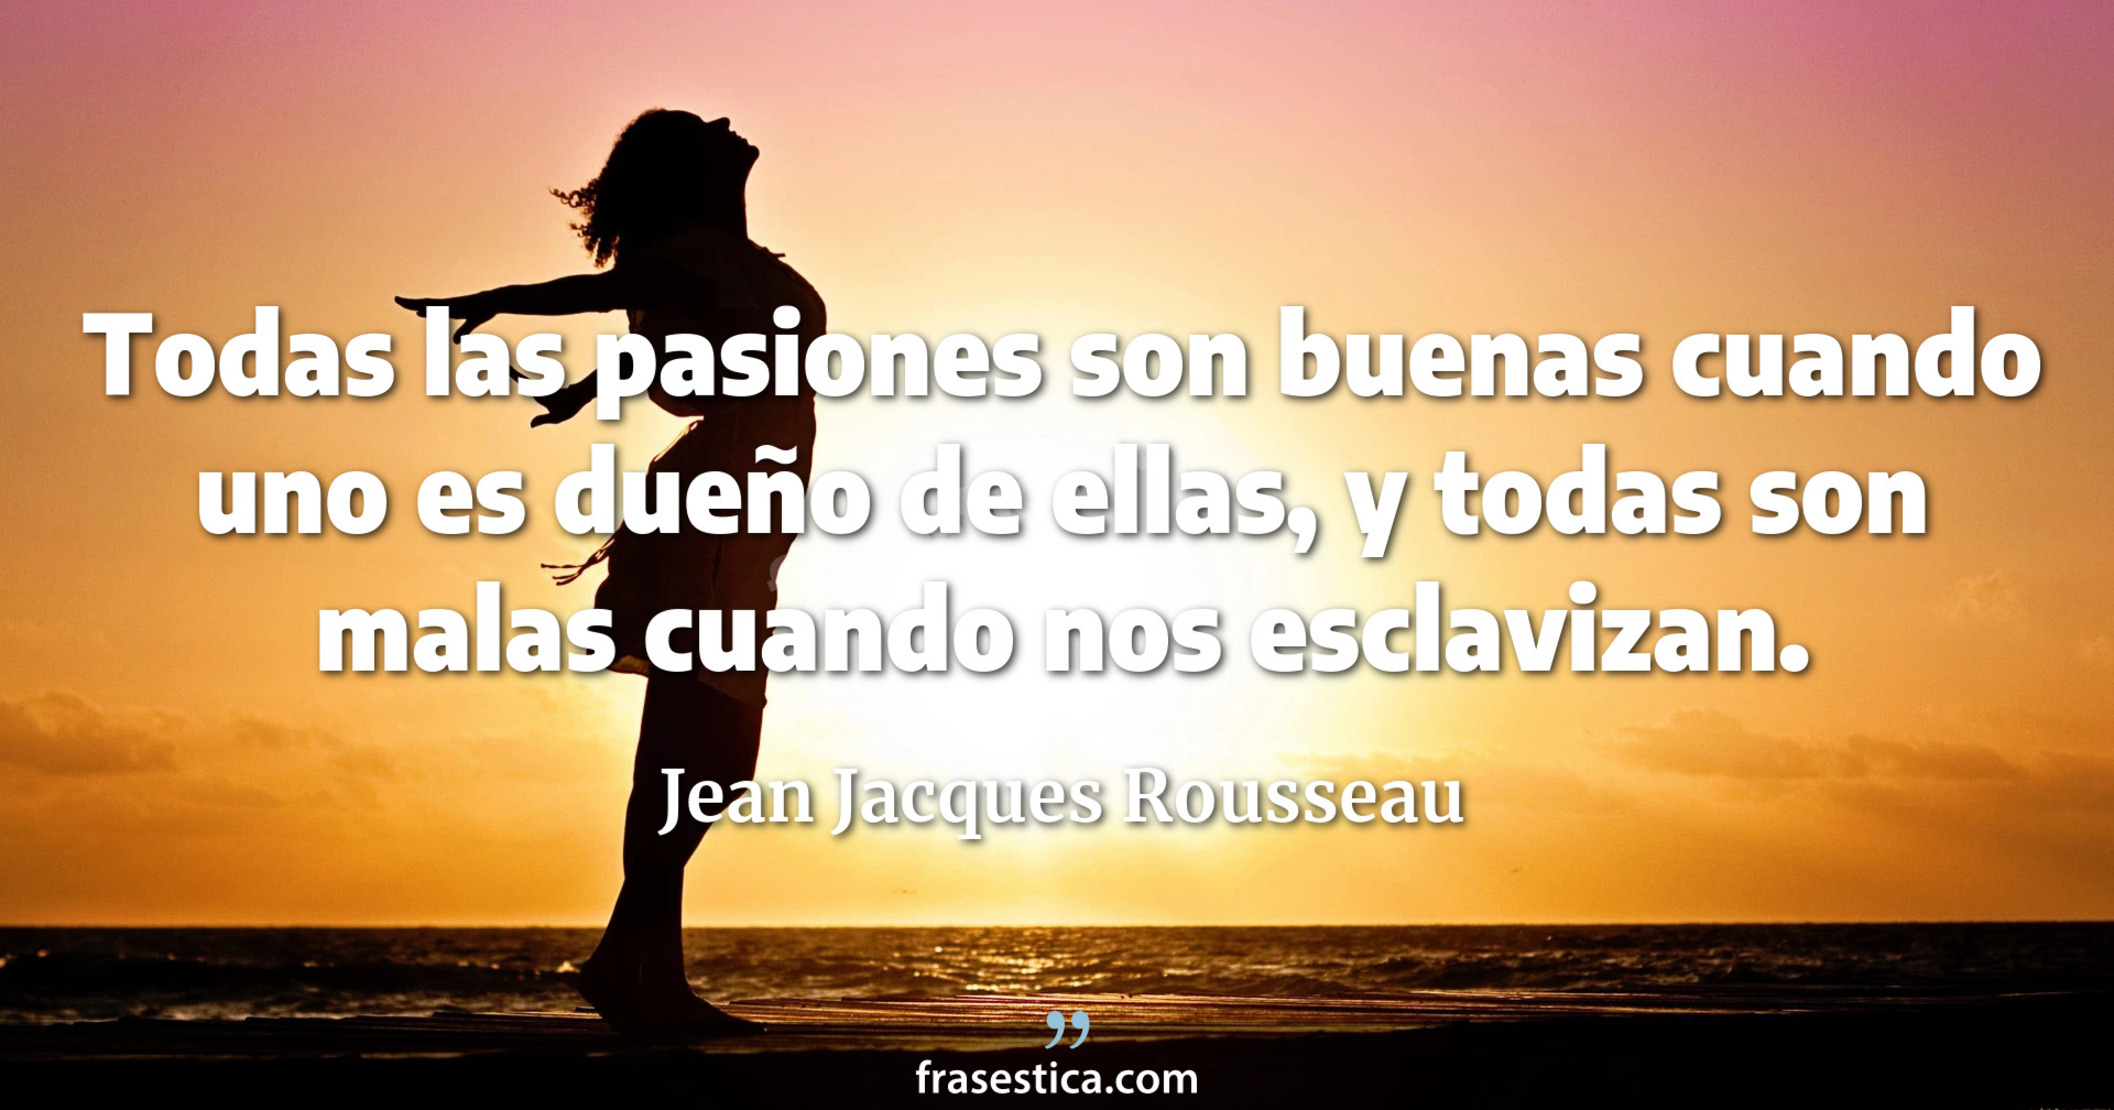 Todas las pasiones son buenas cuando uno es dueño de ellas, y todas son malas cuando nos esclavizan. - Jean Jacques Rousseau